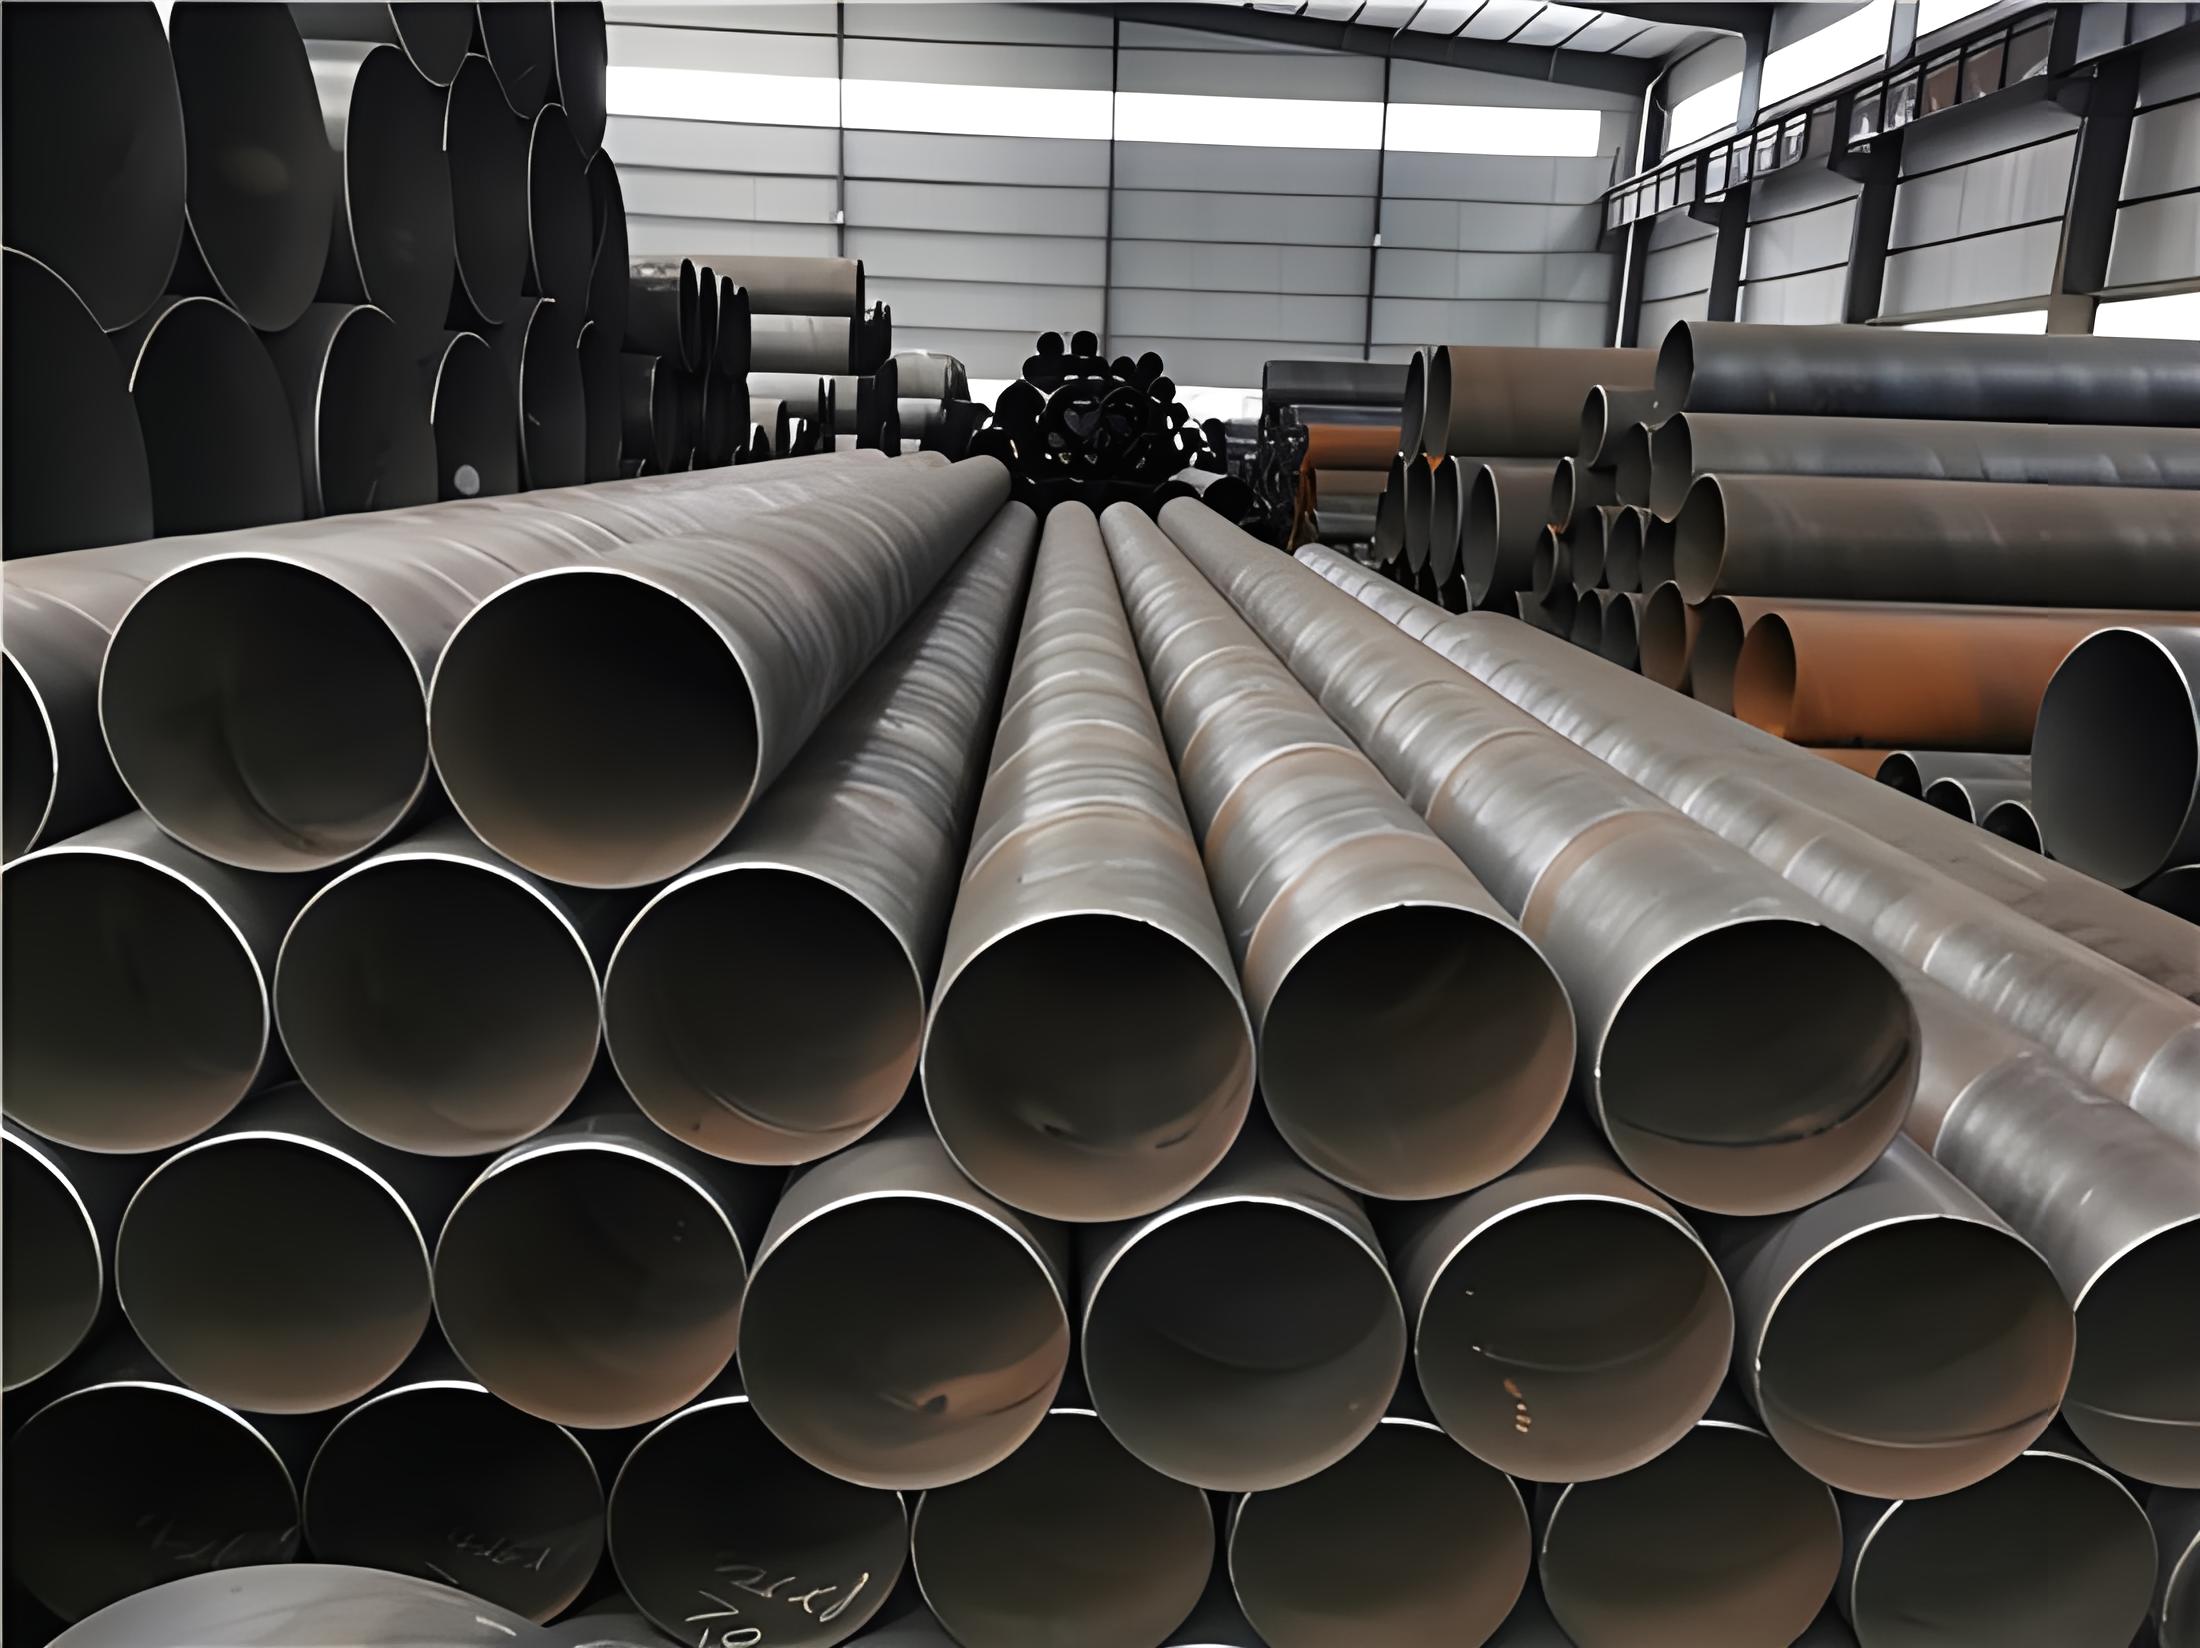 亳州螺旋钢管现代工业建设的坚实基石